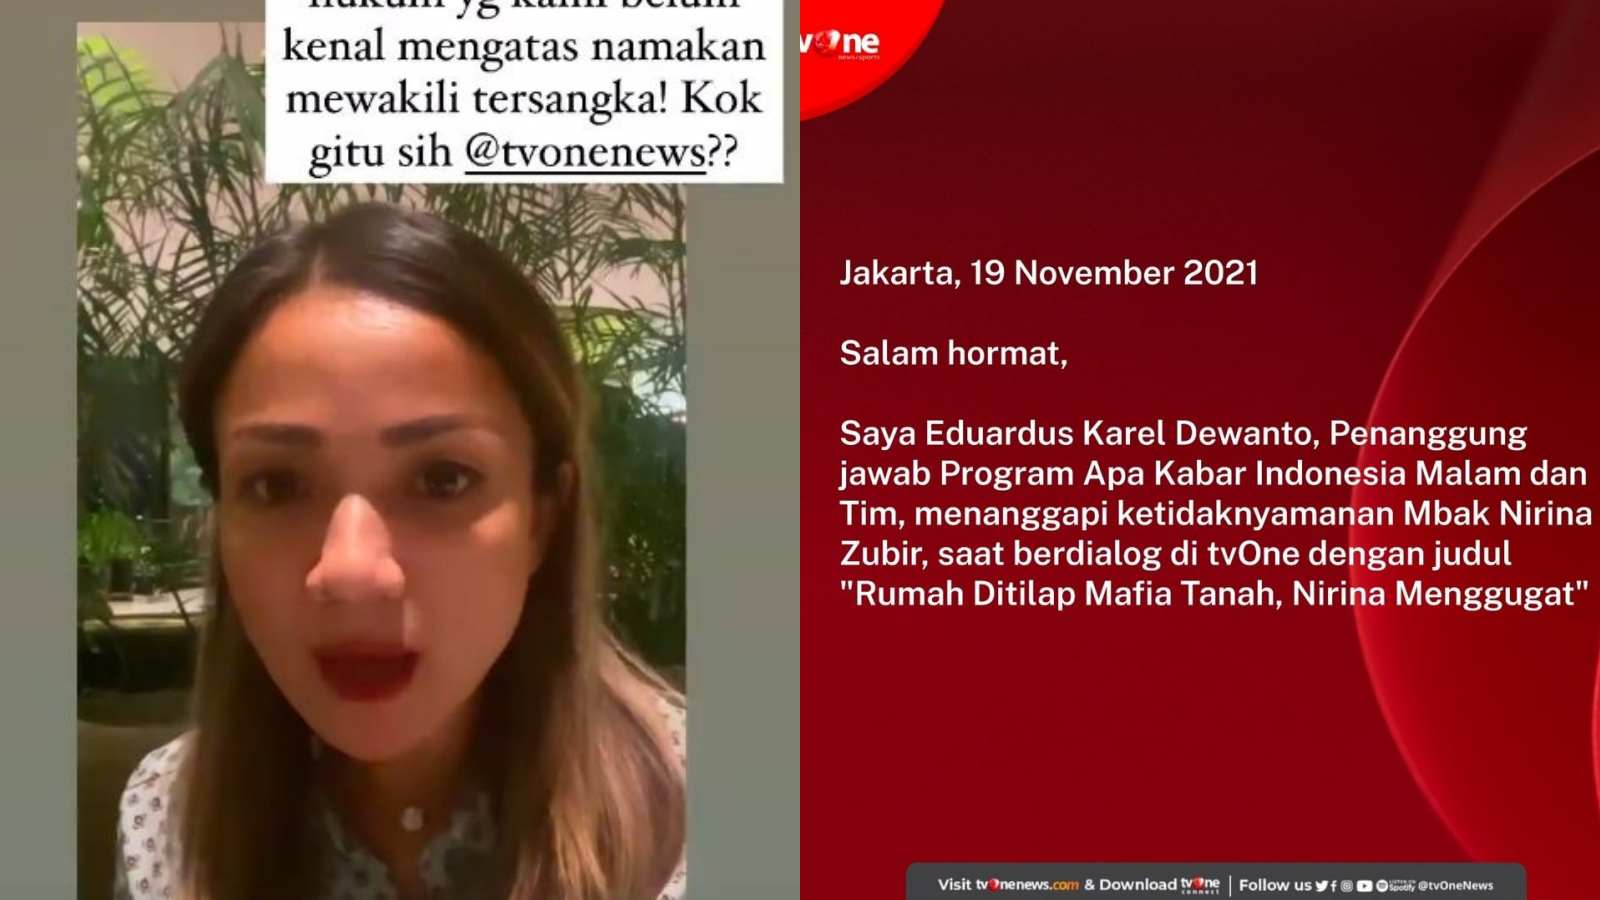 Mengaku Dijebak Oleh TV One, Nirina Zubir Marah Mafia Tanah Diberi Pangung